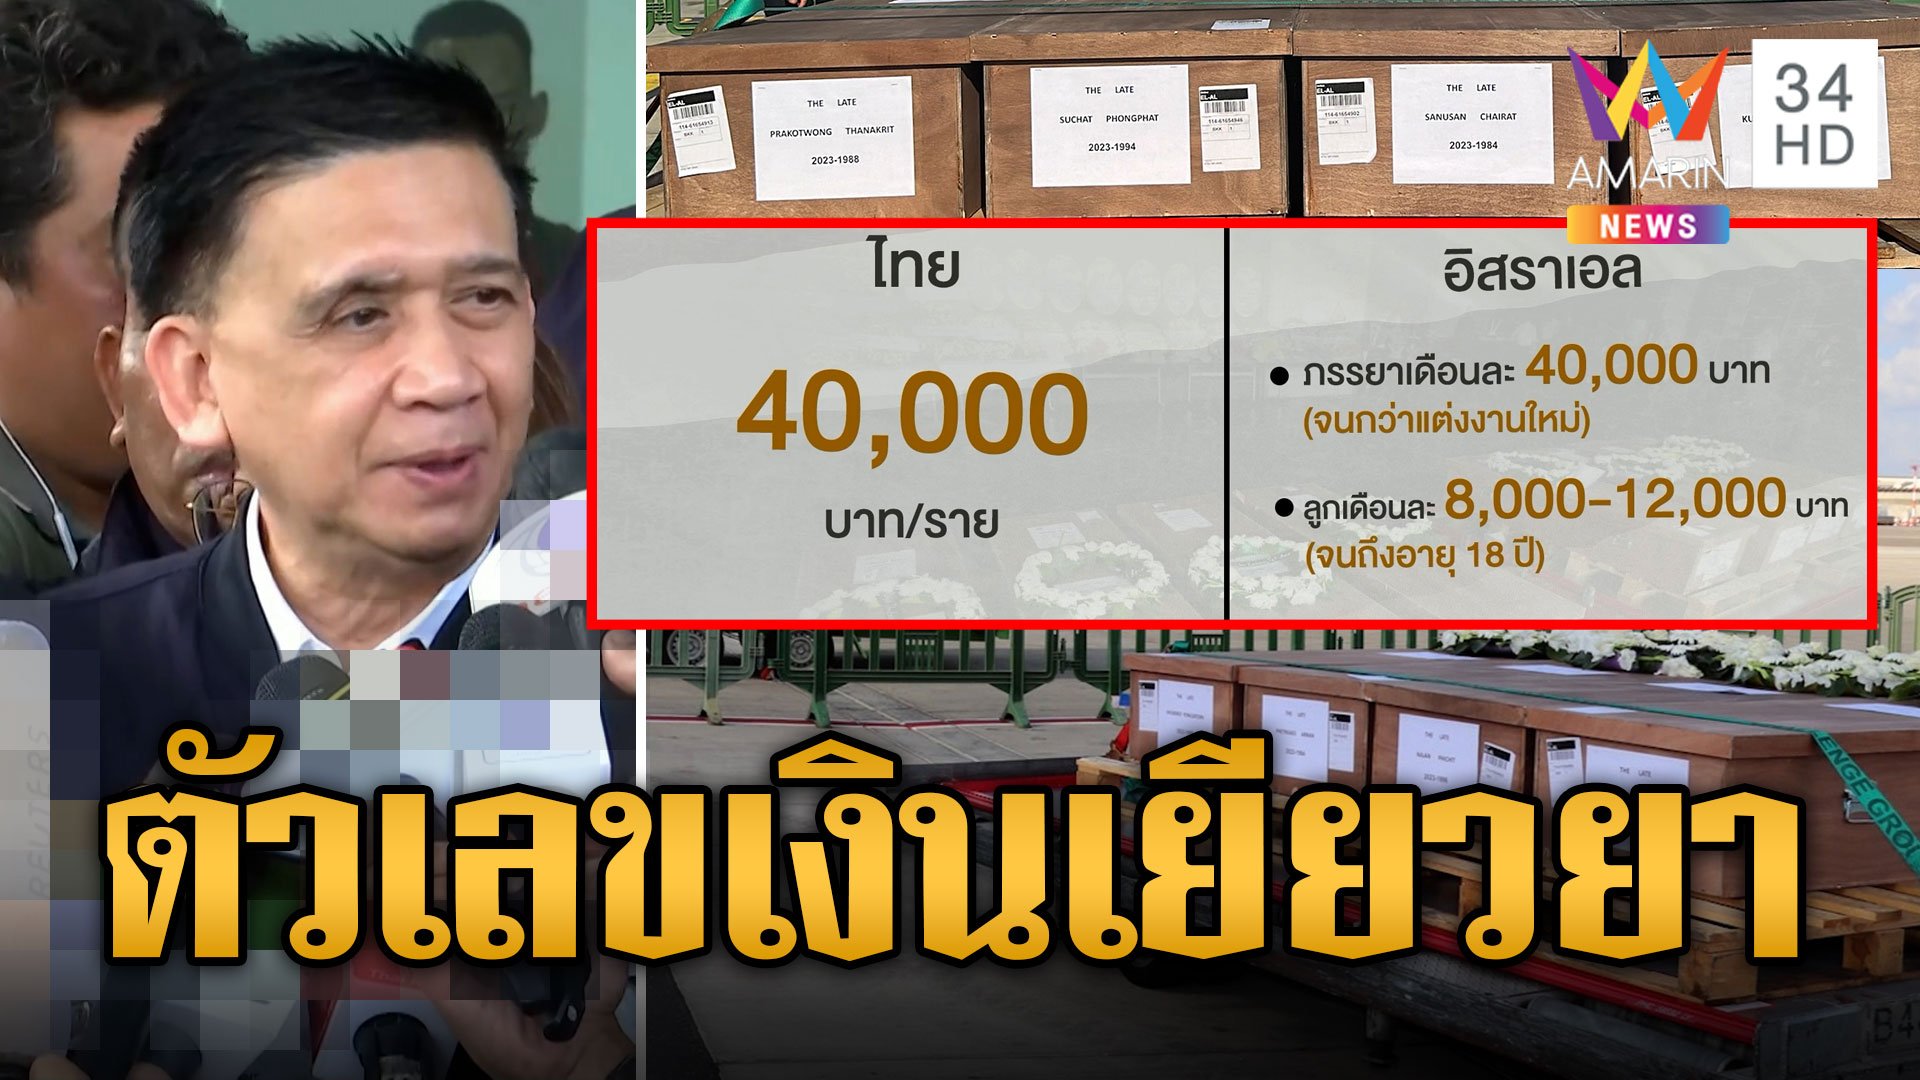 เปิดตัวเลขเงินเยียวยา แรงงานไทยที่เสียชีวิต | ข่าวอรุณอมรินทร์ | 21 ต.ค. 66 | AMARIN TVHD34